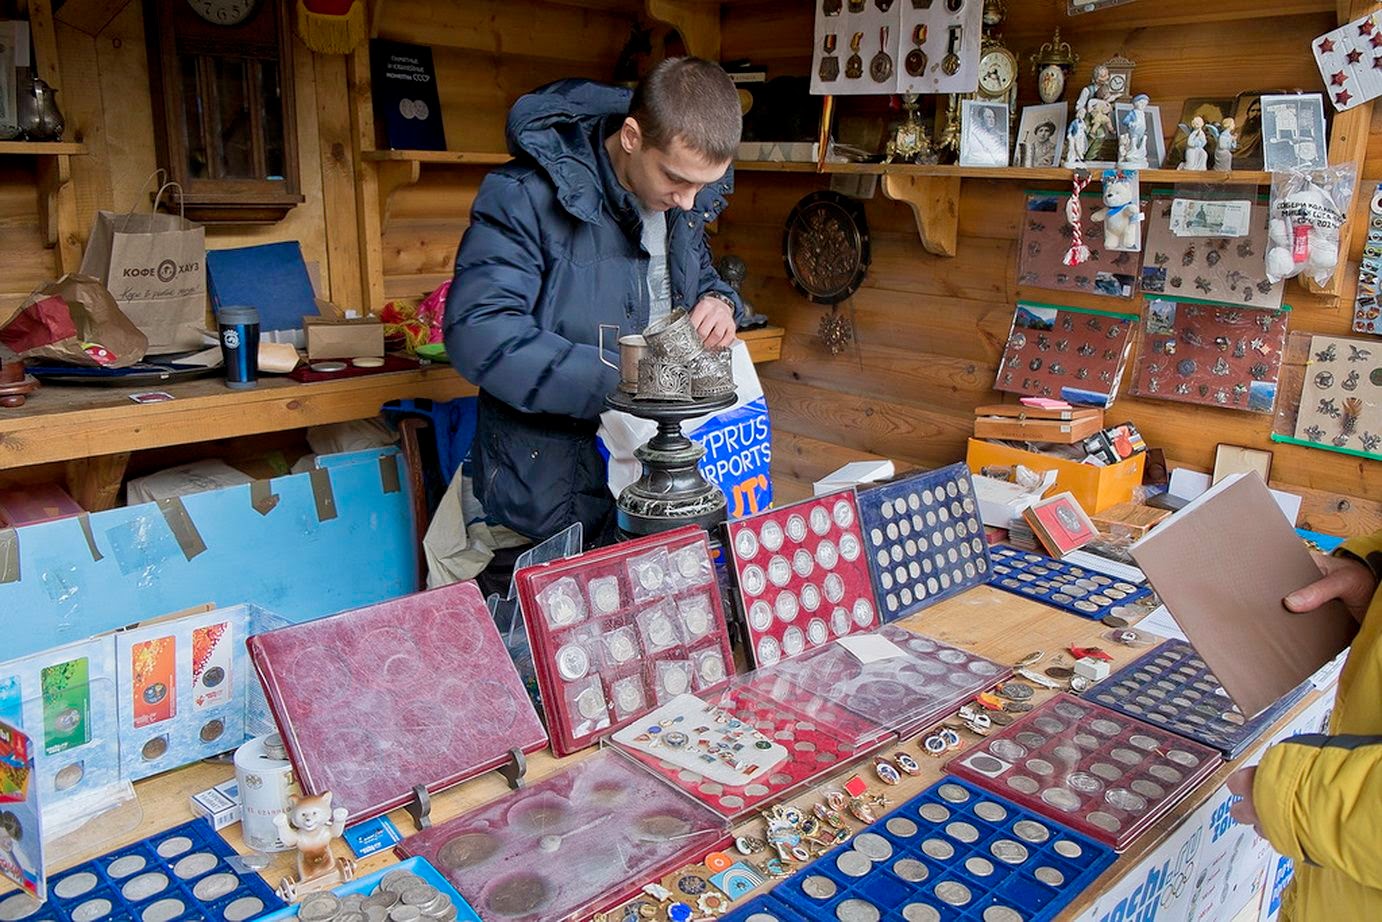 Блошиный рынок 1. Блошиный рынок Вернисаж в Москве. Вернисаж в Измайлово блошиный рынок. Блошиный рынок Кунцево. Блошиный рынок в Измайловском вернисаже.